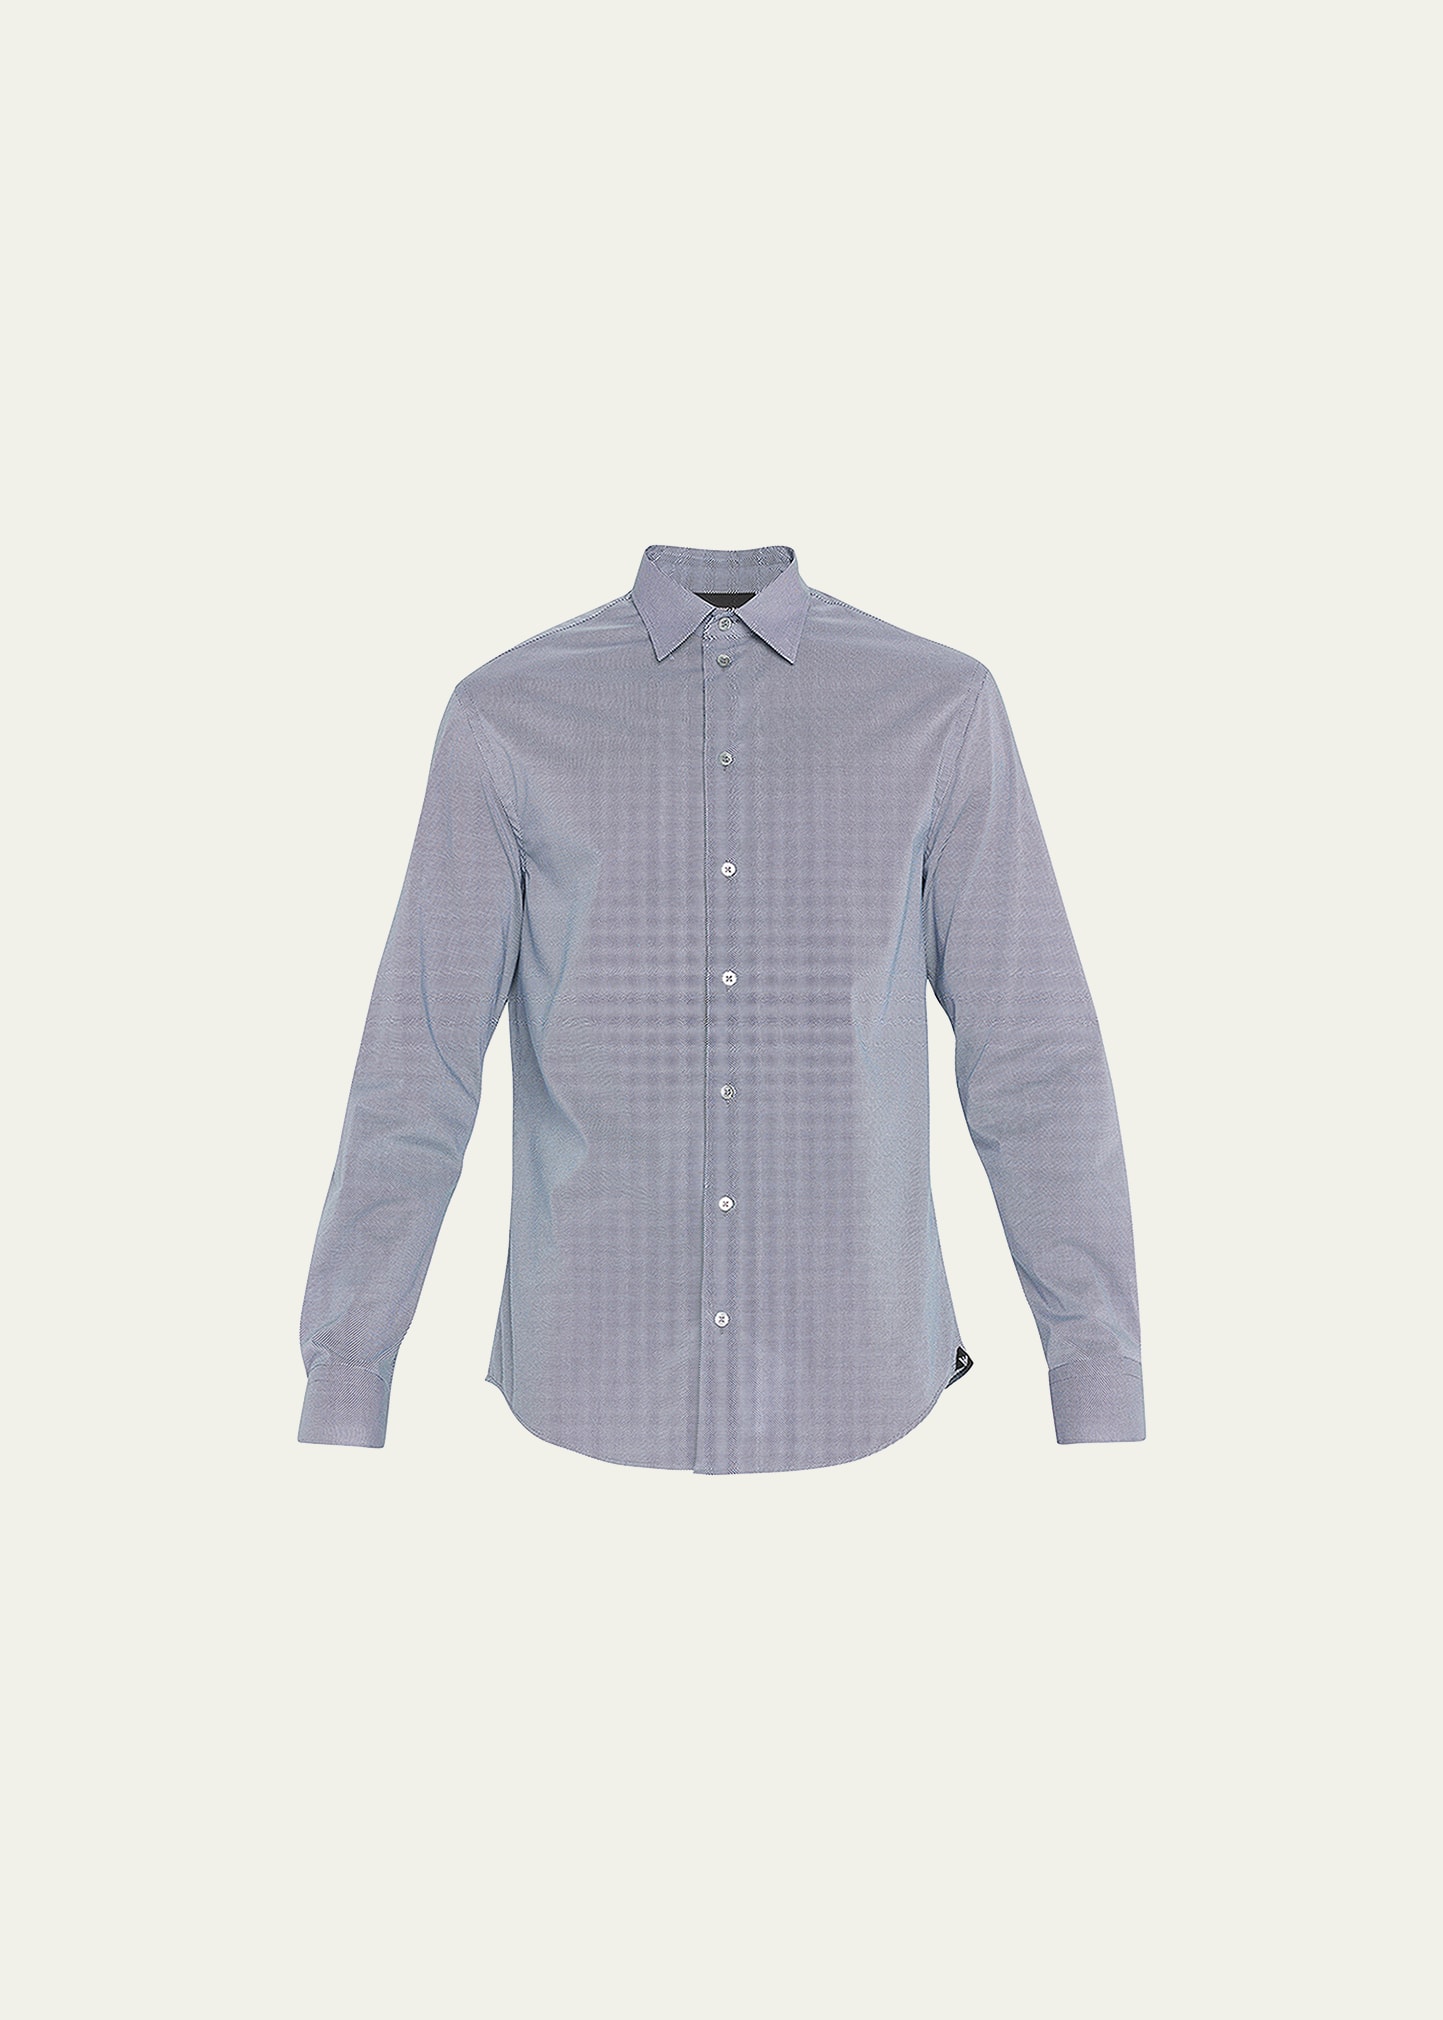 Emporio Armani Men's Cotton Micro-stripe Sport Shirt In Solid Aqua